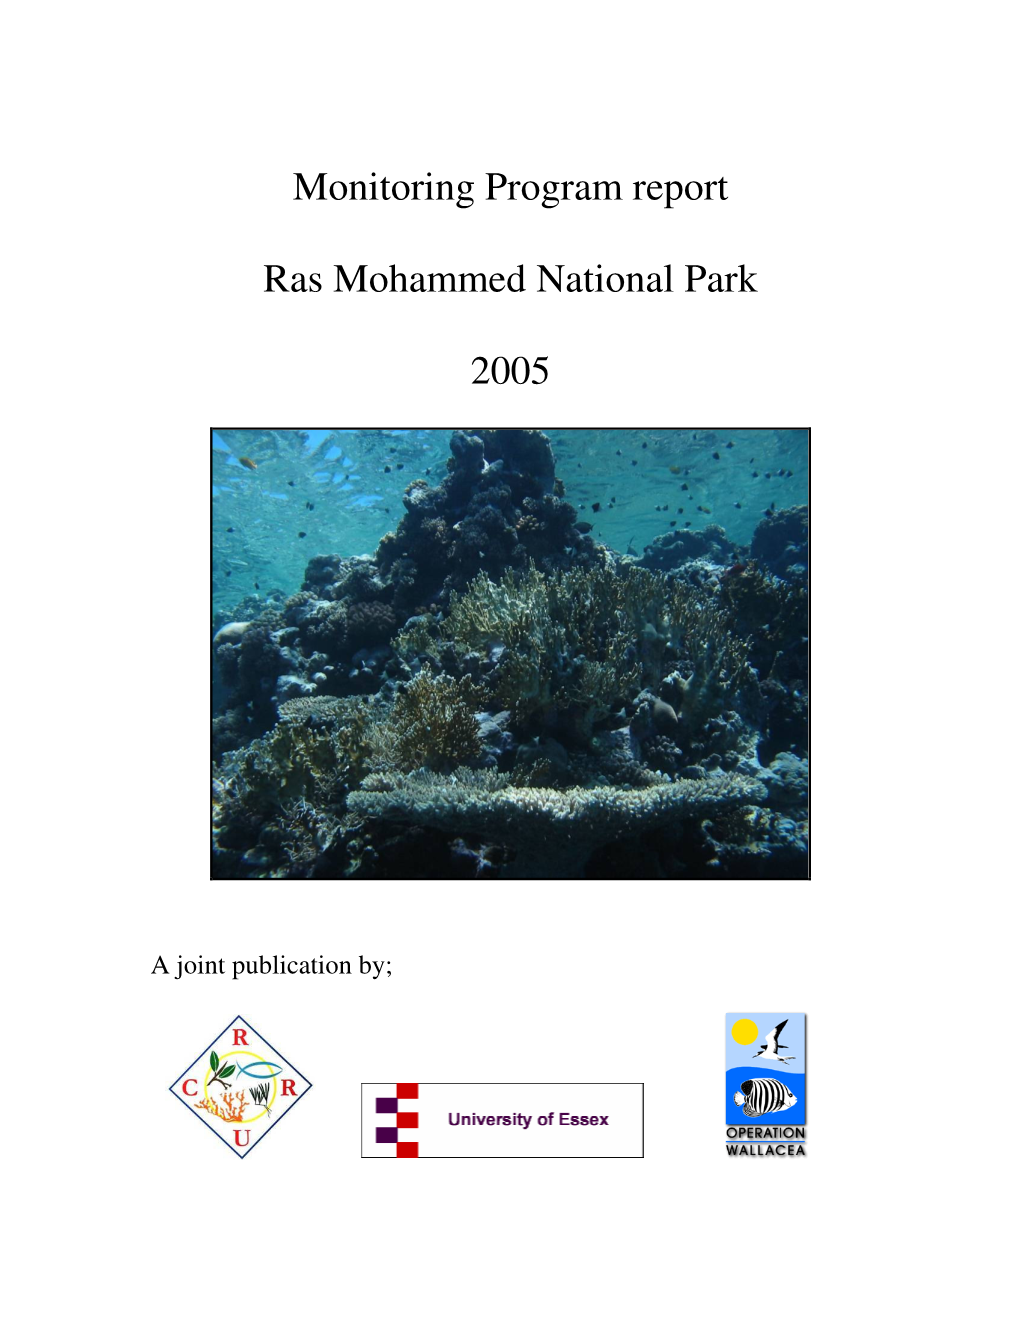 Monitoring Program Report Ras Mohammed National Park 2005